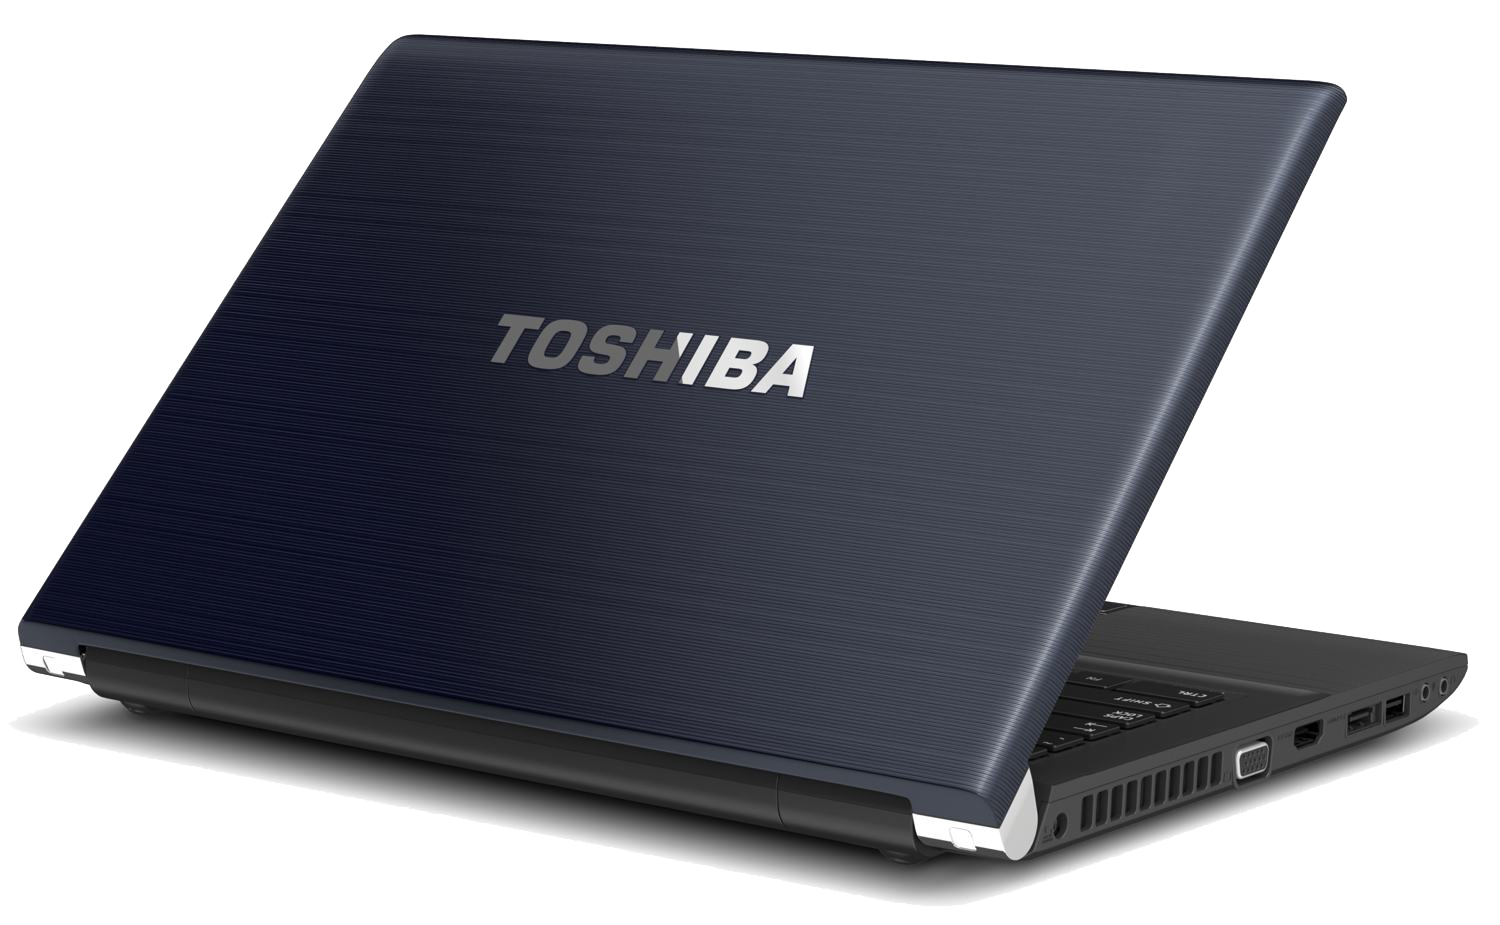 Toshiba File Tech Techs Laptop PNG